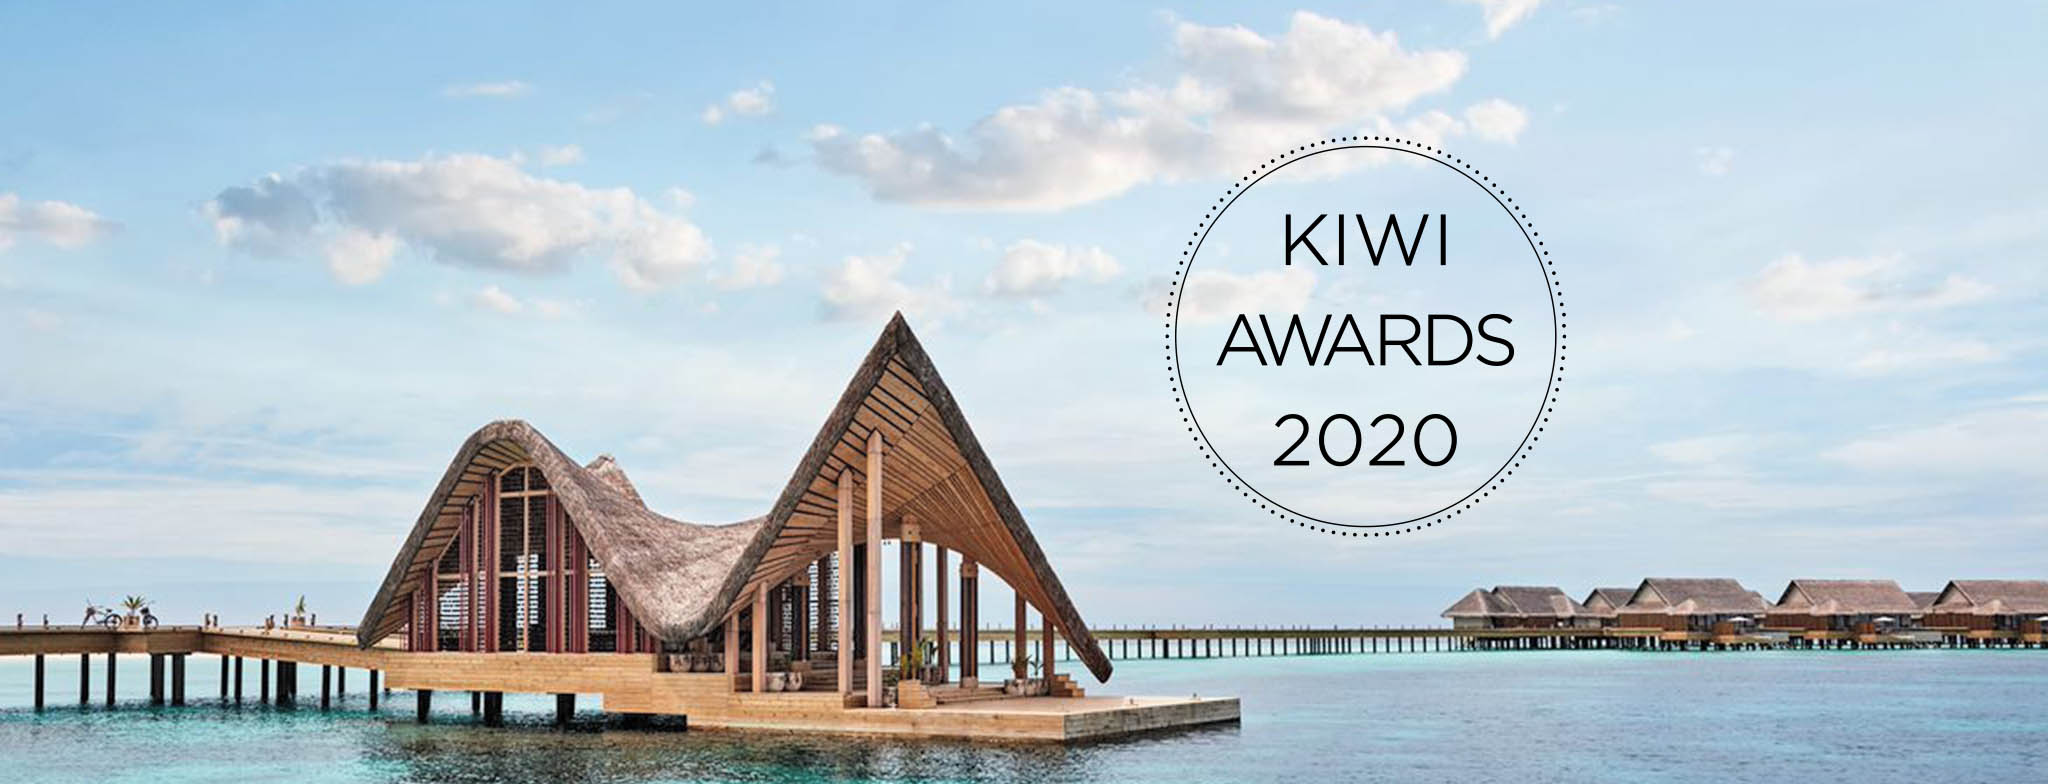 Kiwi Collection Hotel Awards 2020